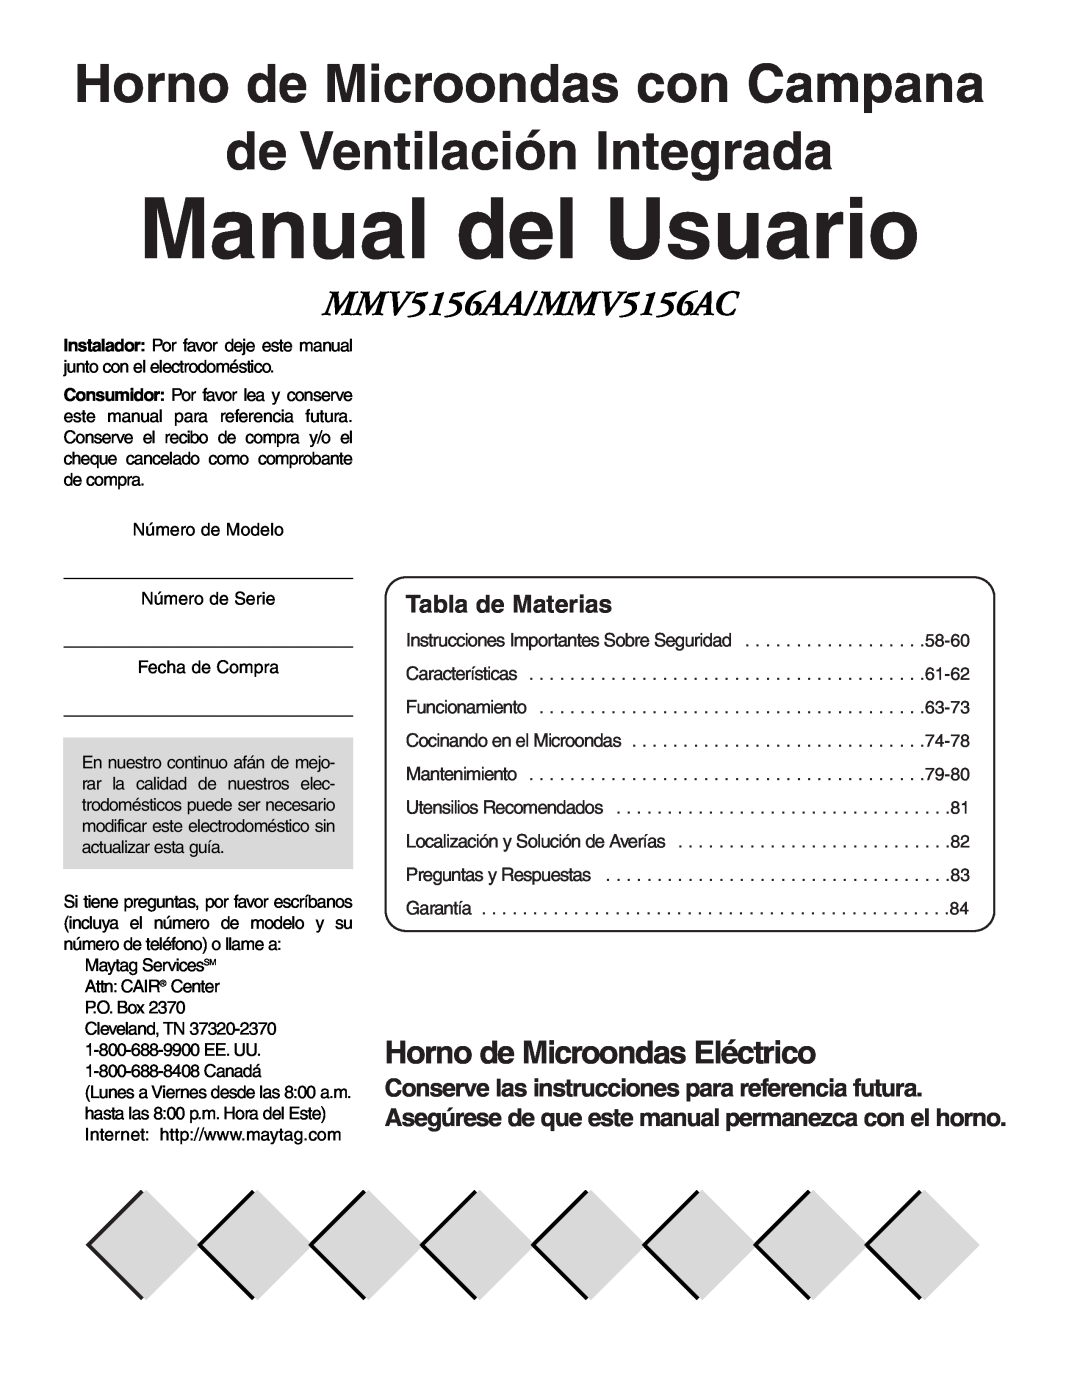 Maytag MMV51566AA/MMV5156AC Manual del Usuario, Horno de Microondas Eléctrico, Tabla de Materias, de Ventilación Integrada 